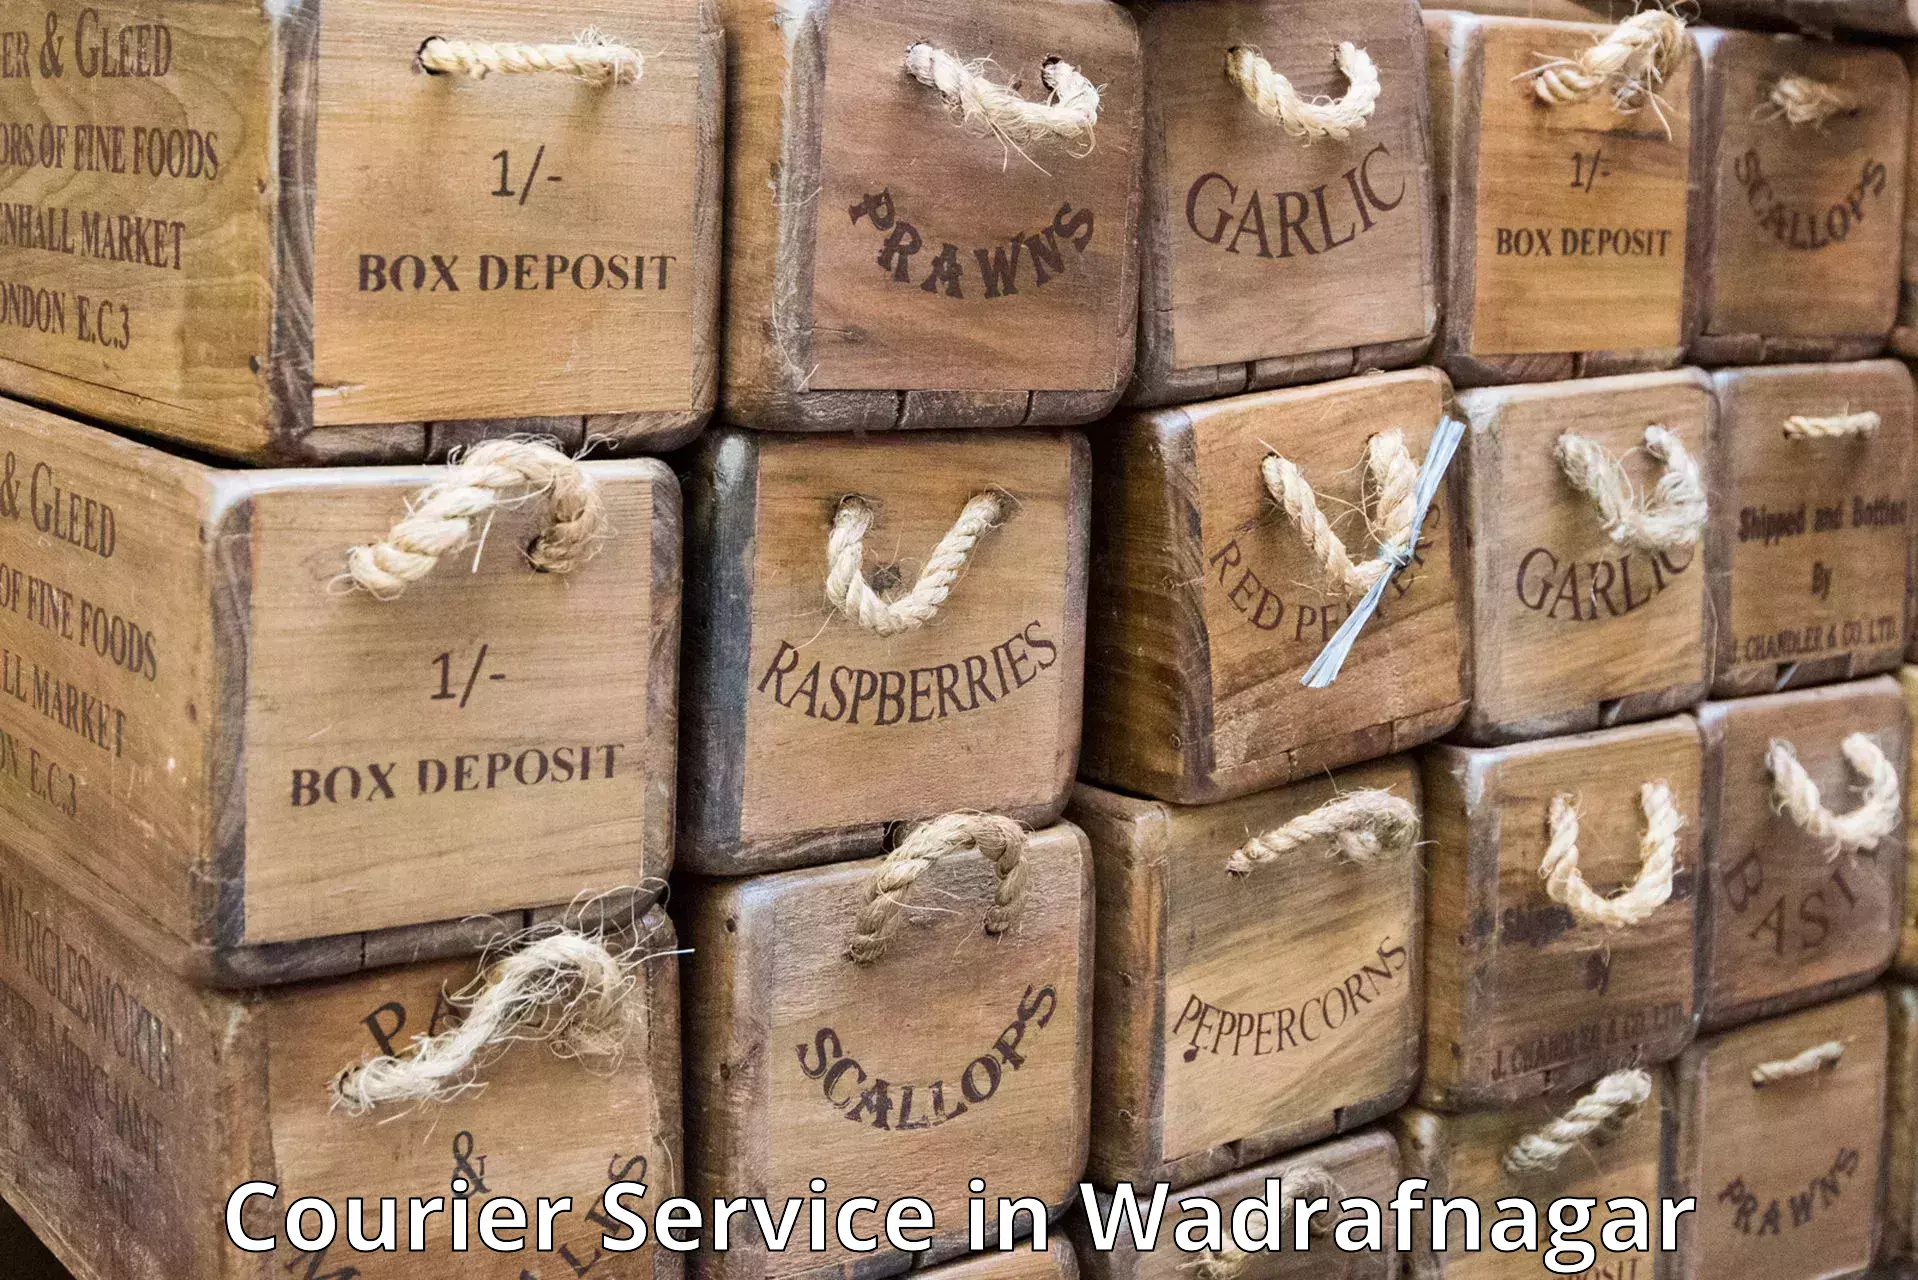 Regular parcel service in Wadrafnagar